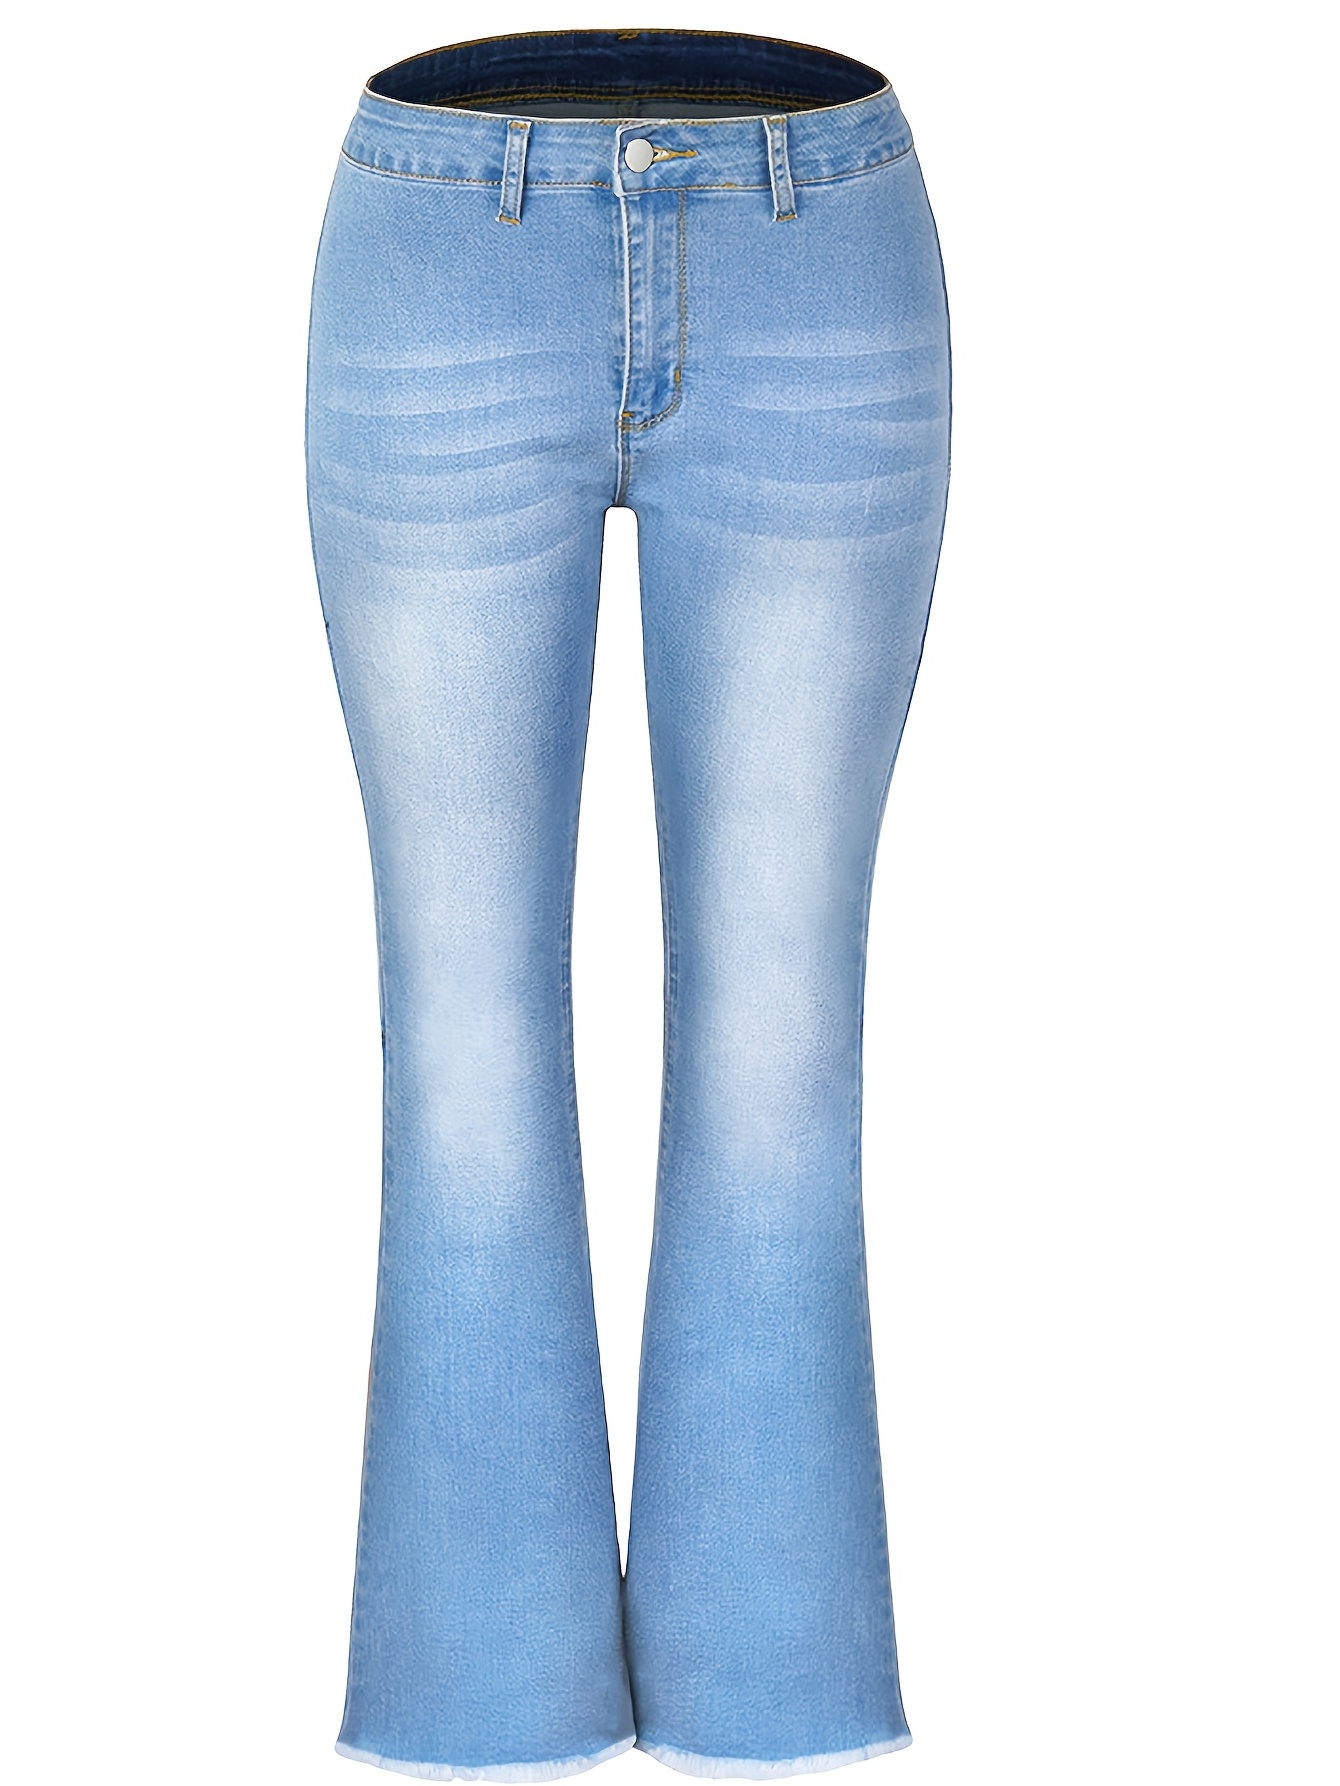 NWT Vibrant women high waist distress light blue flares jeans denim bell  bottoms